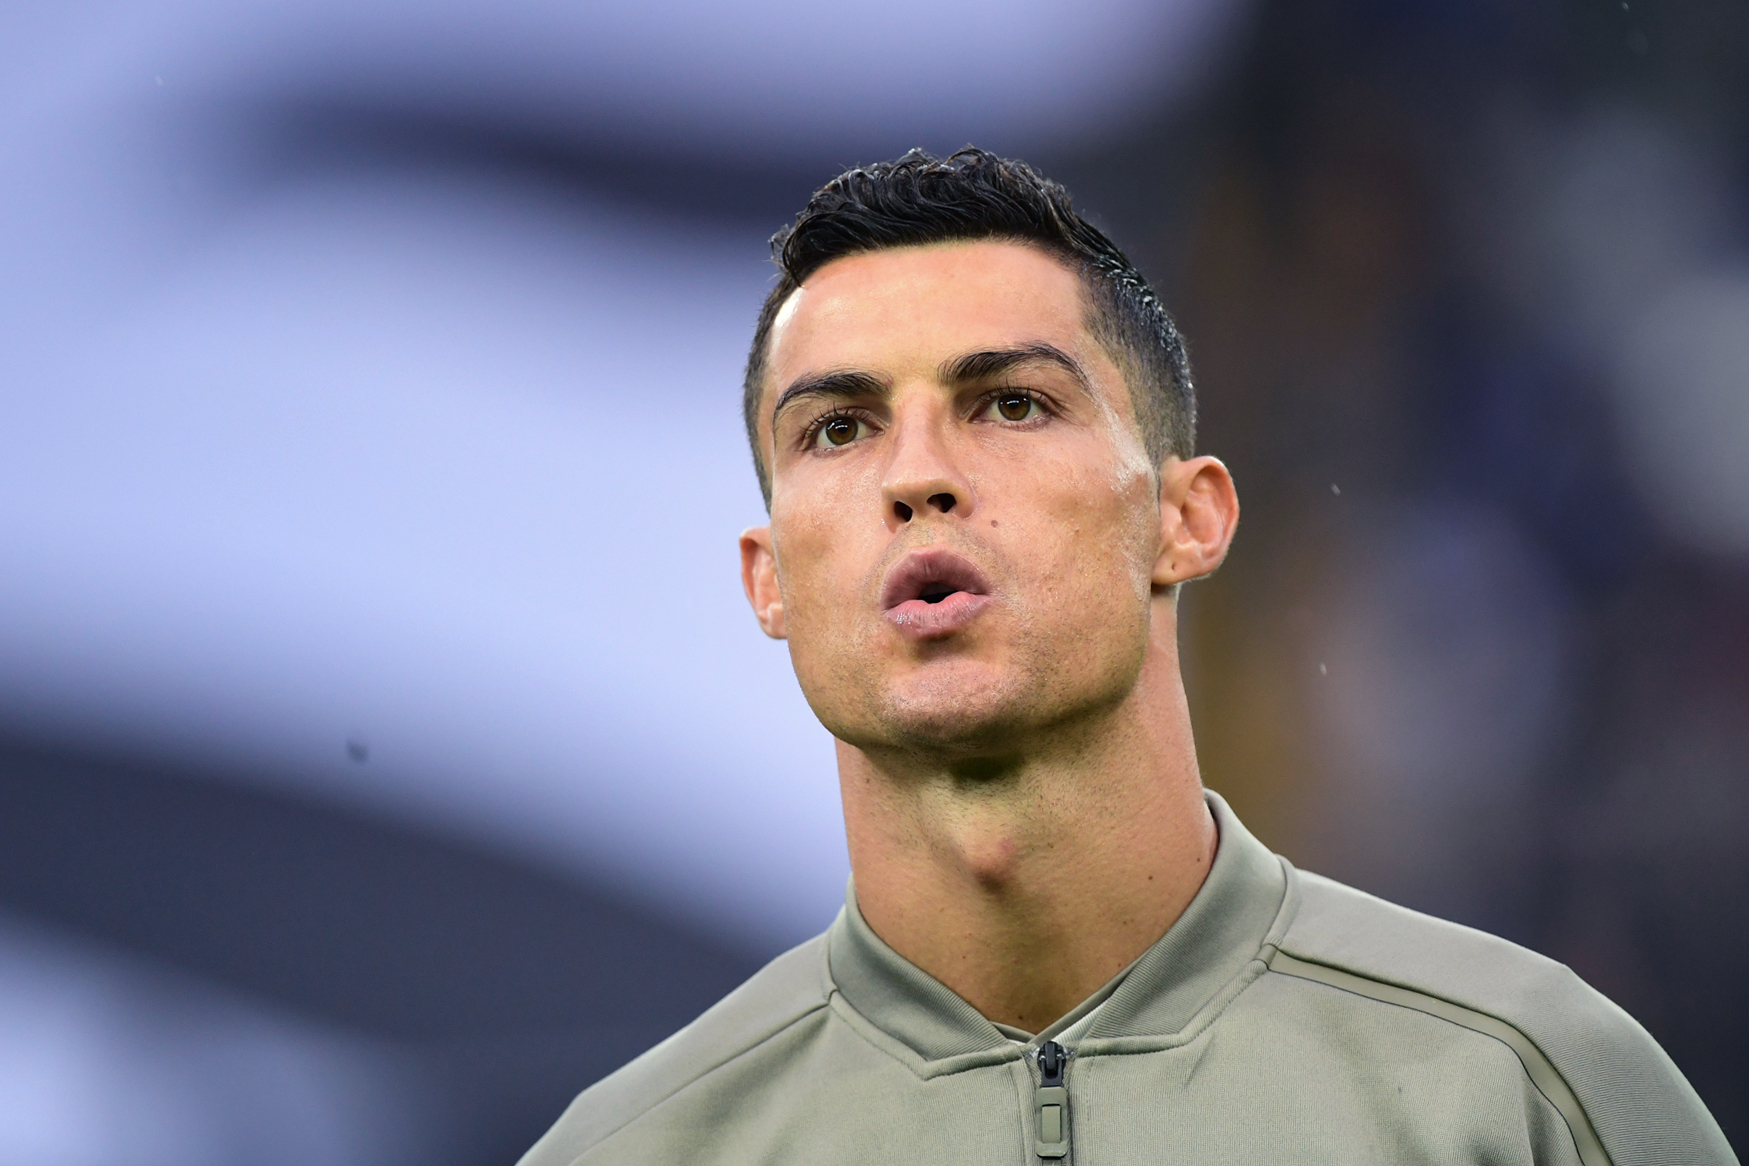 Advogado de Ronaldo reage a acusações de violação: “Documentos reproduzidos nos media são puras invenções”